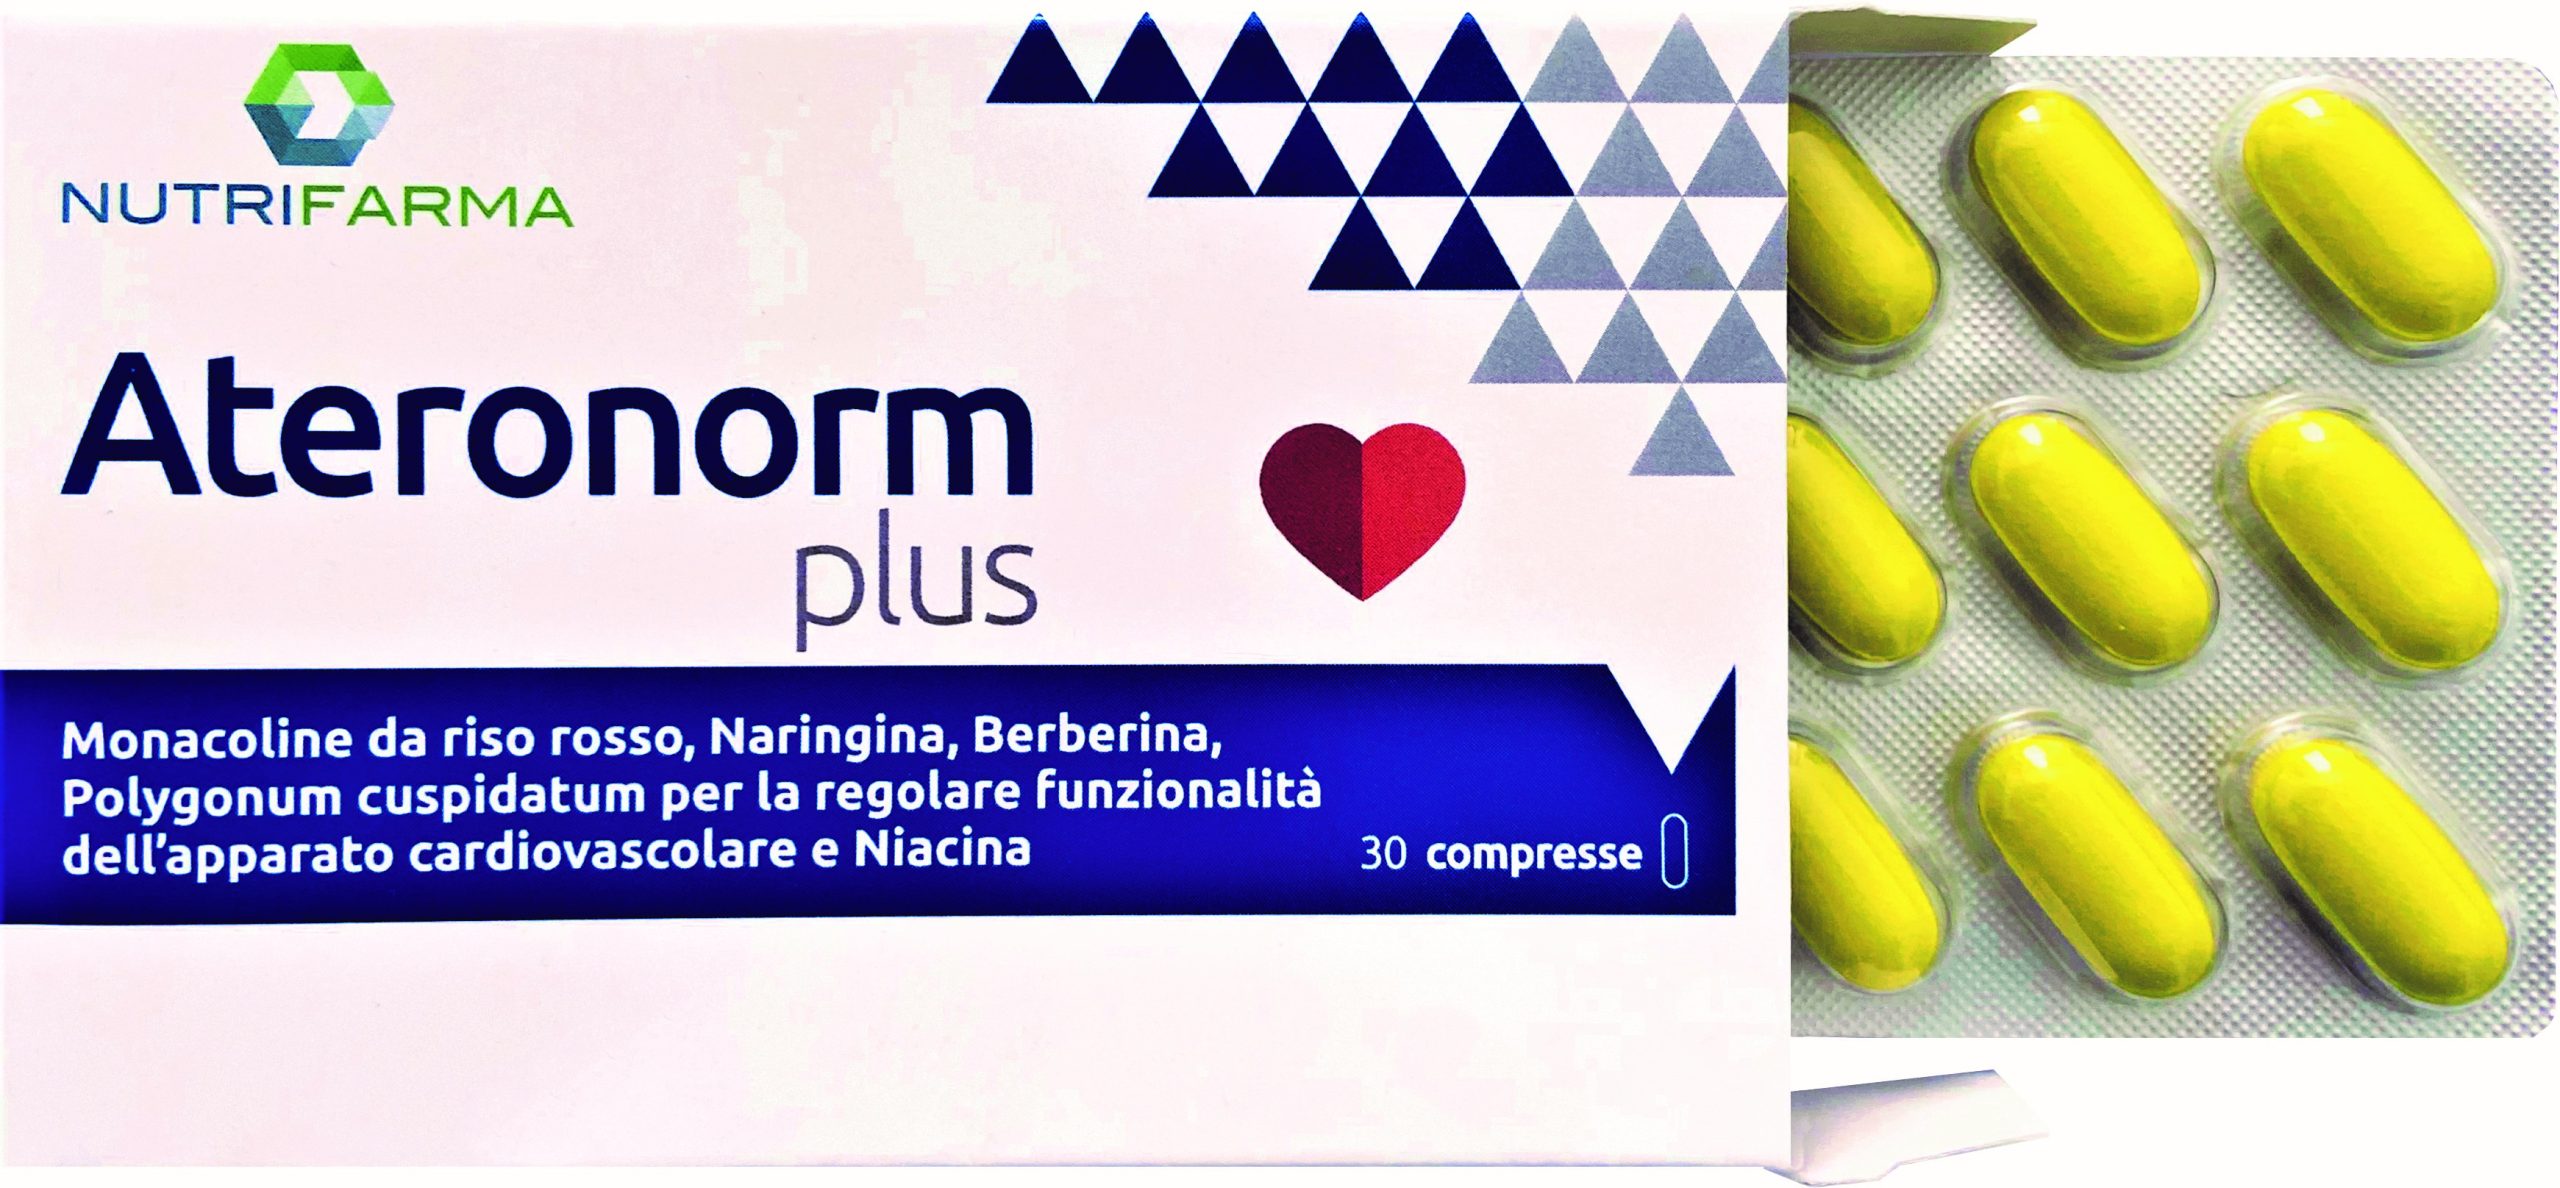 Ateronorm Plus di Nutrifarma, il nuovo integratore per il benessere cardiovascolare